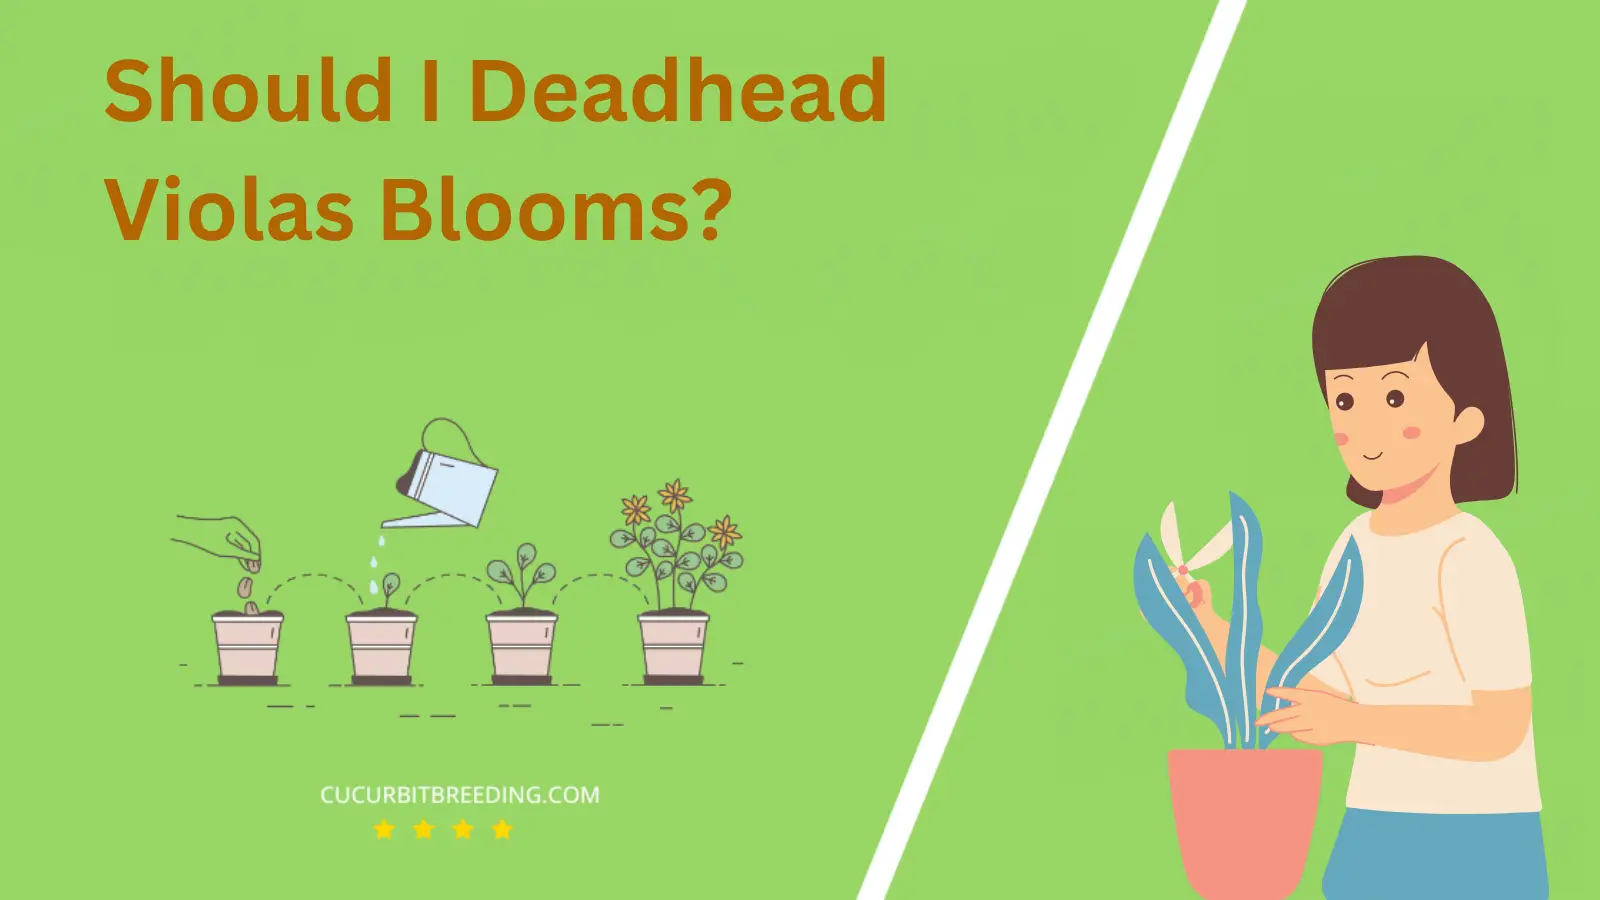 Should I Deadhead Violas Blooms?